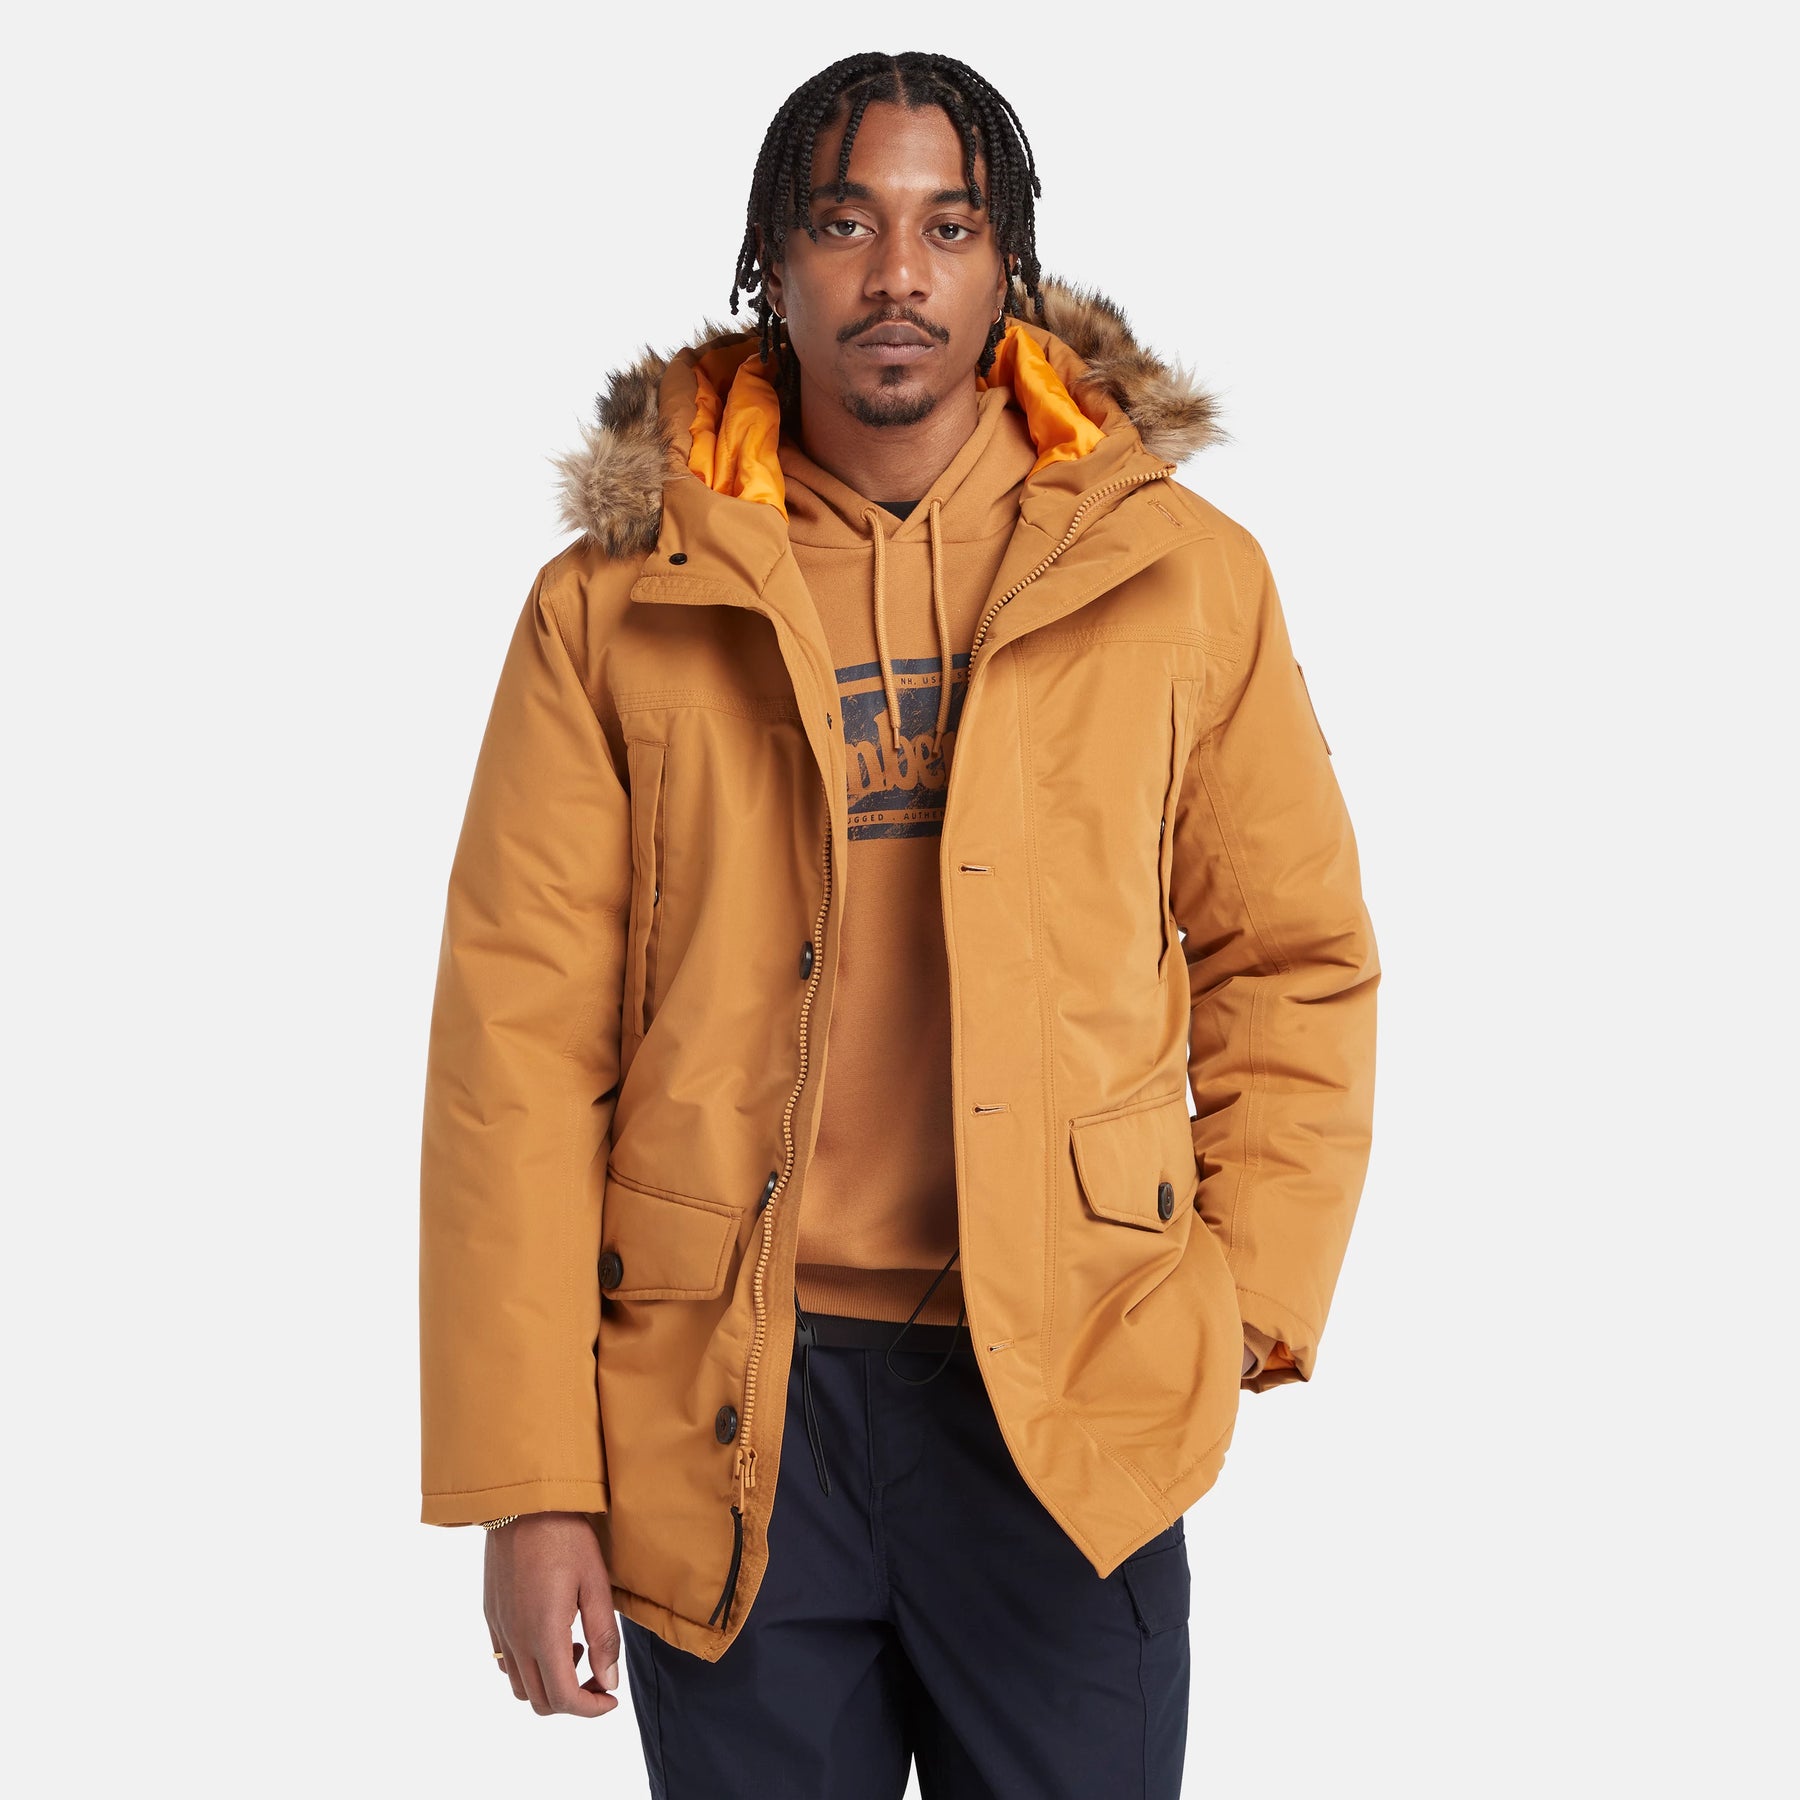 Design Michael Kors Men's Orange Hooded Bib Snorkel Parka Coat Jacket Size L